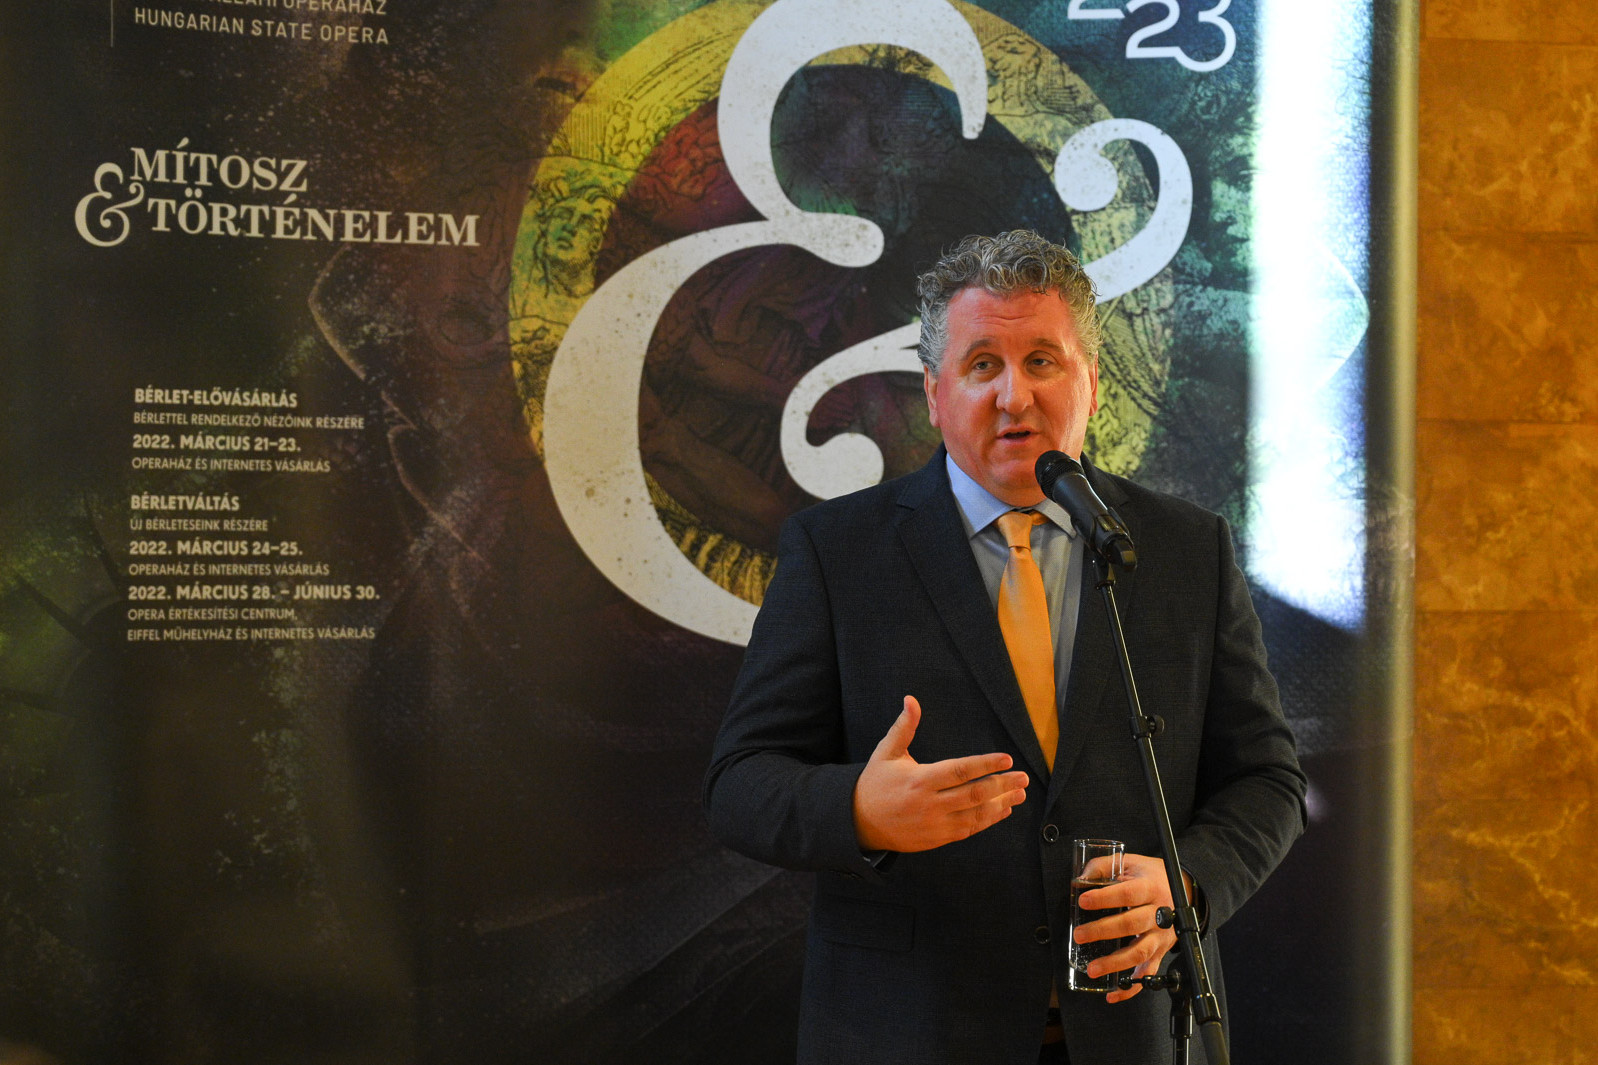 Ókovács Szilveszter, a Magyar Állami Operaház főigazgatója az Opera csütörtöki évadismertető sajtótájékoztatóján